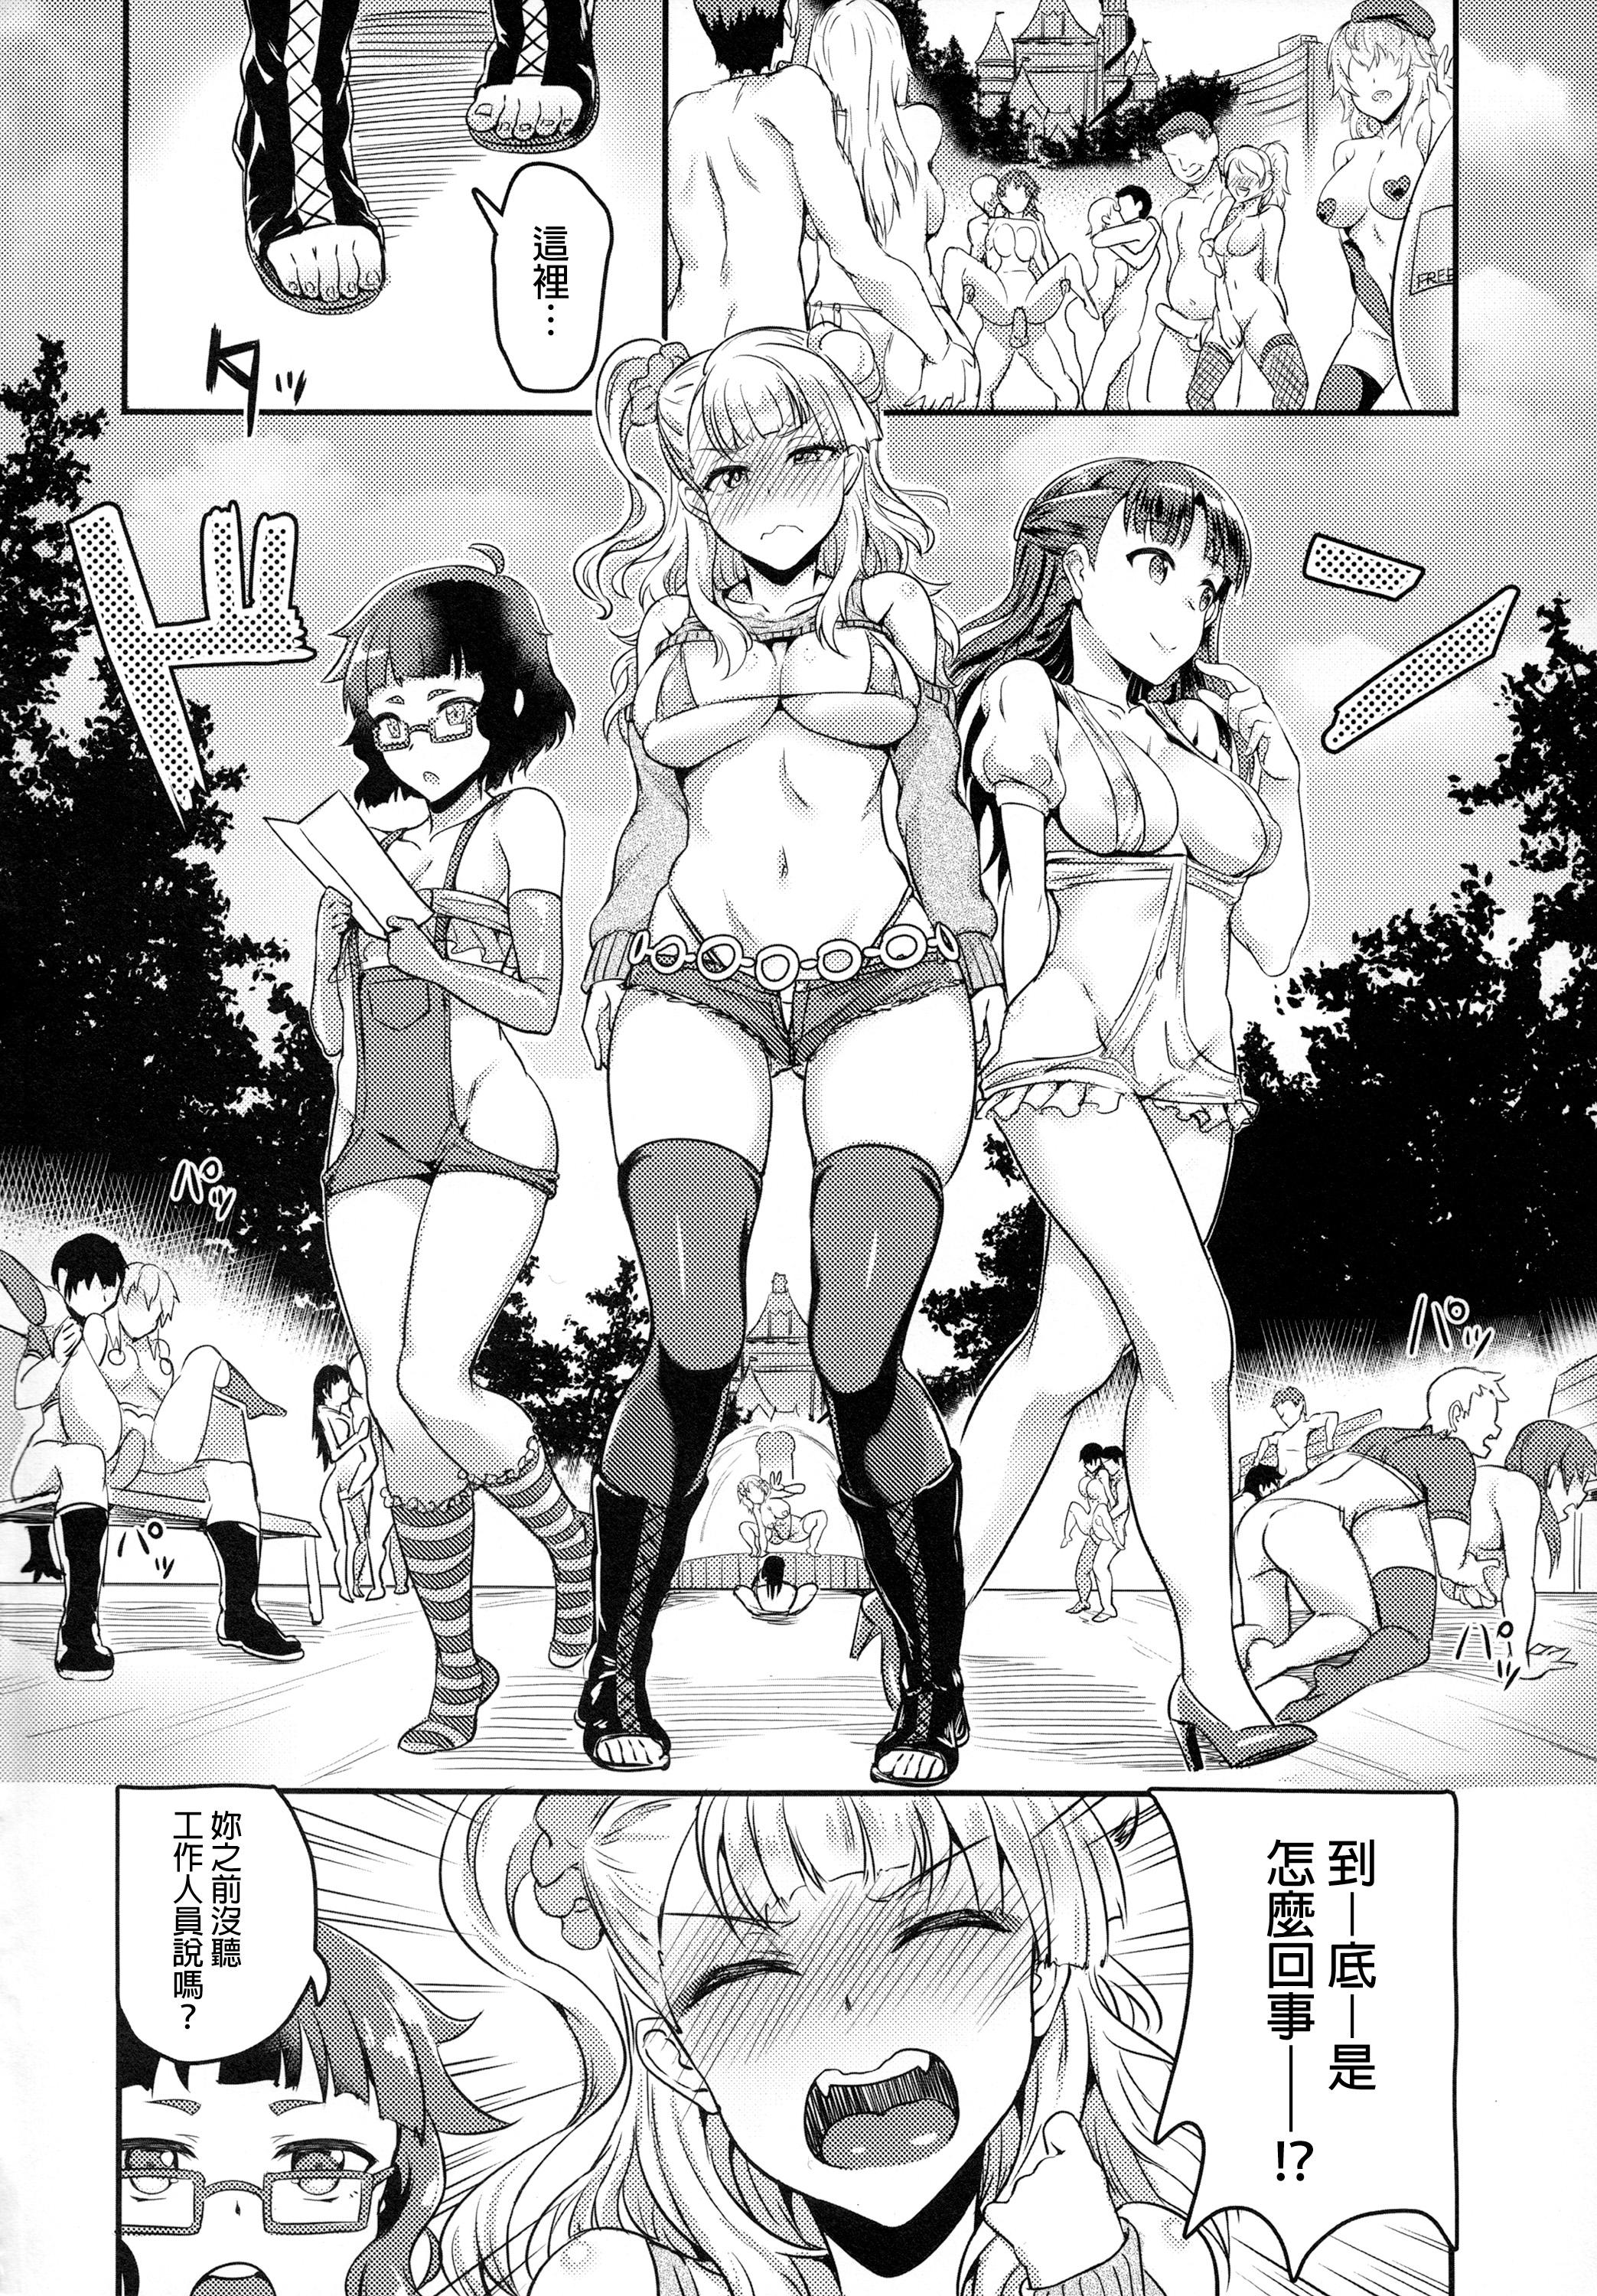 Hard Cock Oideyo! Galko-chan! Galko wa, Mizuryu Kei Land ni Ikutte Hontou Desu ka? - Oshiete galko-chan Girlnextdoor - Page 3